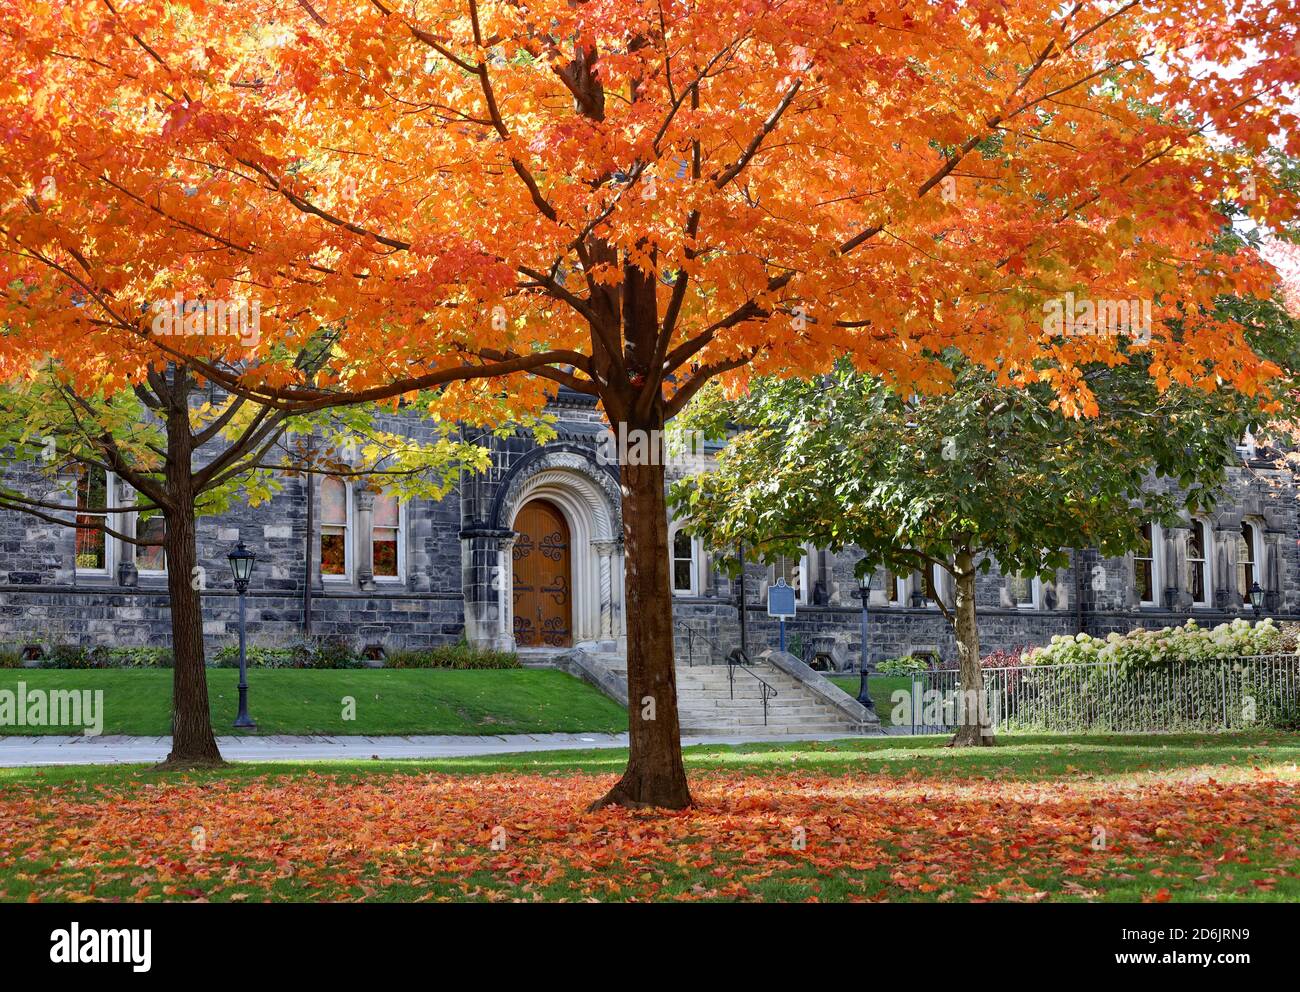 Érable aux couleurs d'automne glorieuses devant le gothique bâtiment universitaire en pierre de style Banque D'Images